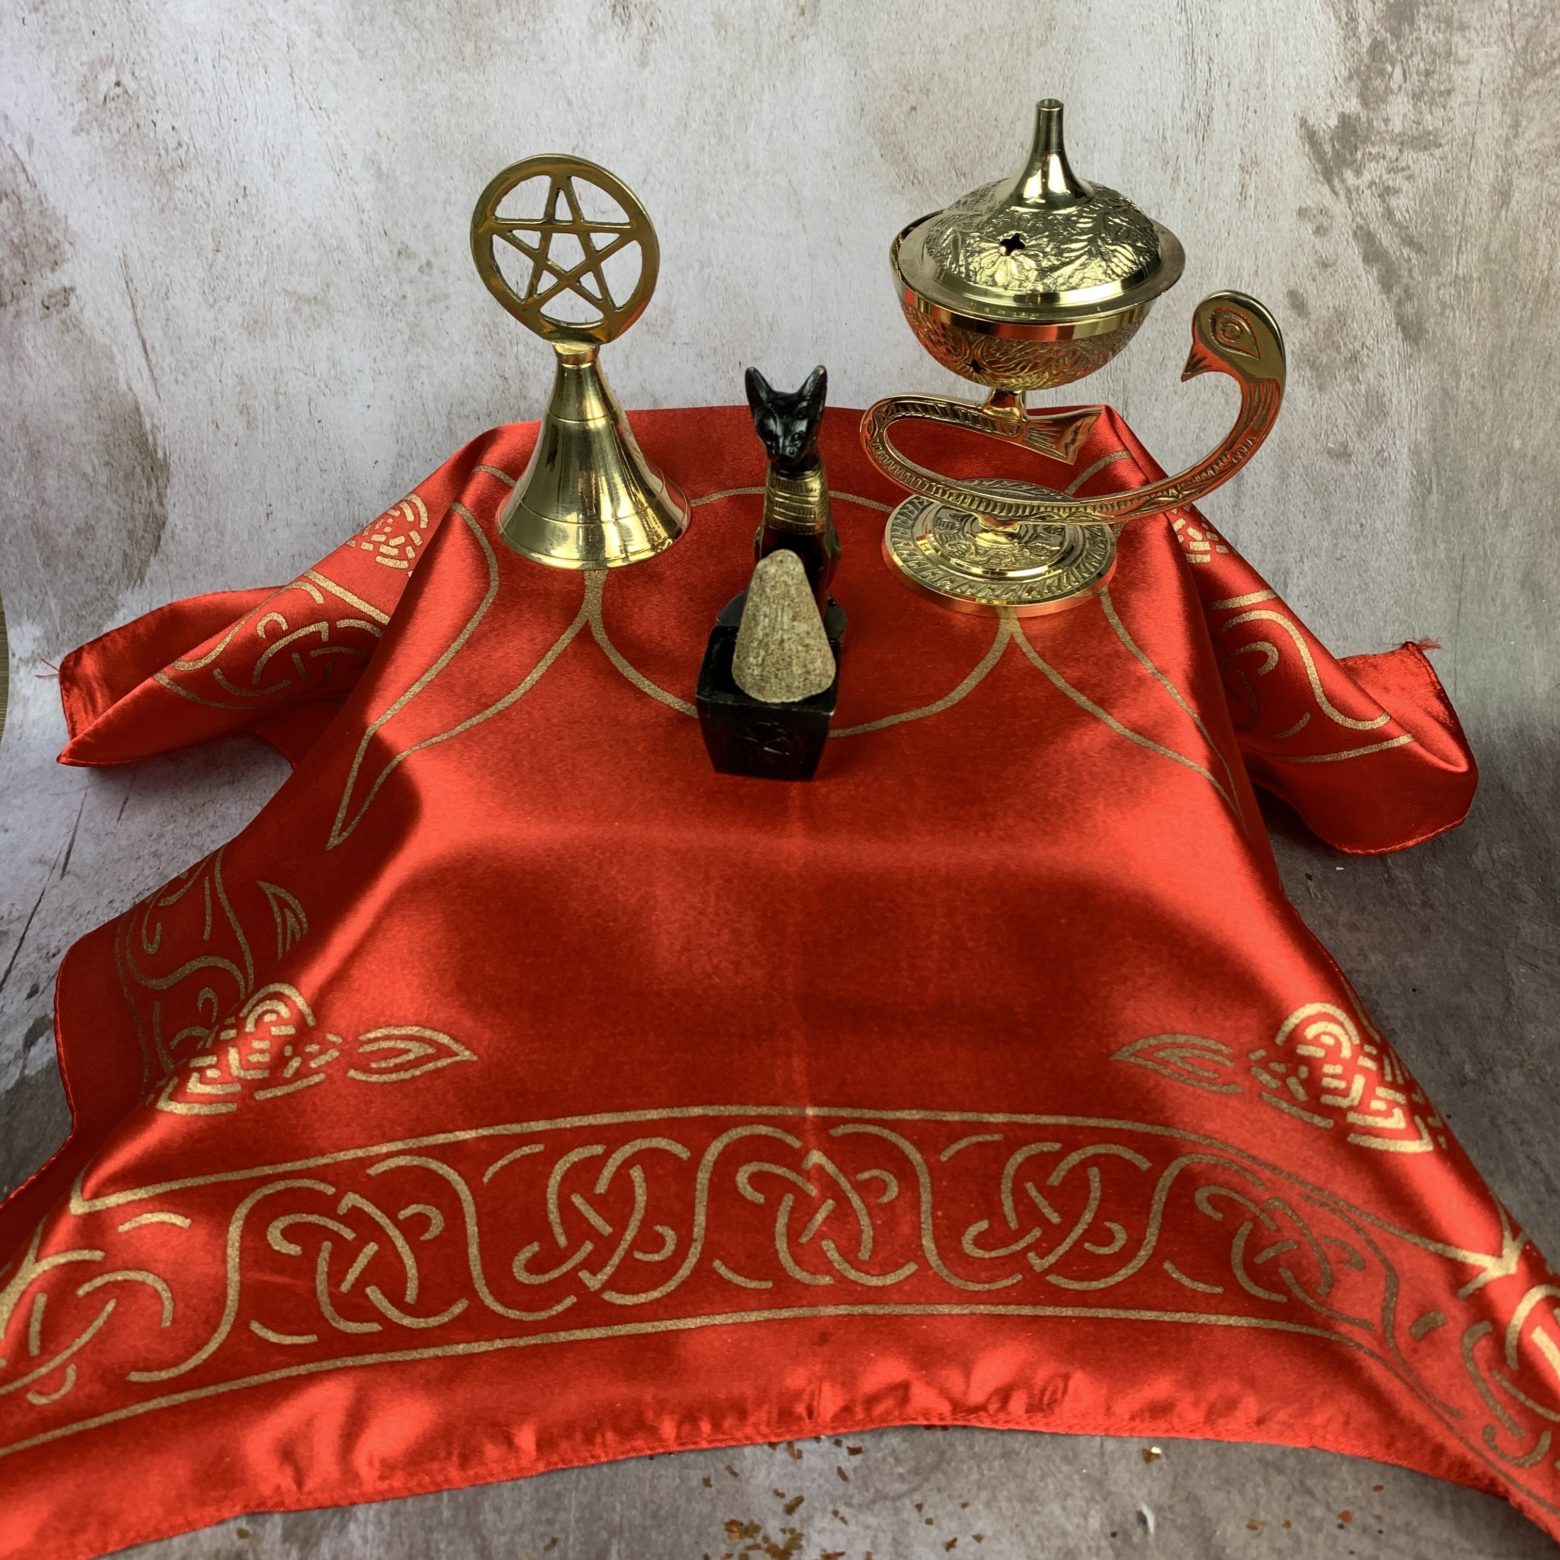 Gold-Embellished Satin Altar Cloth